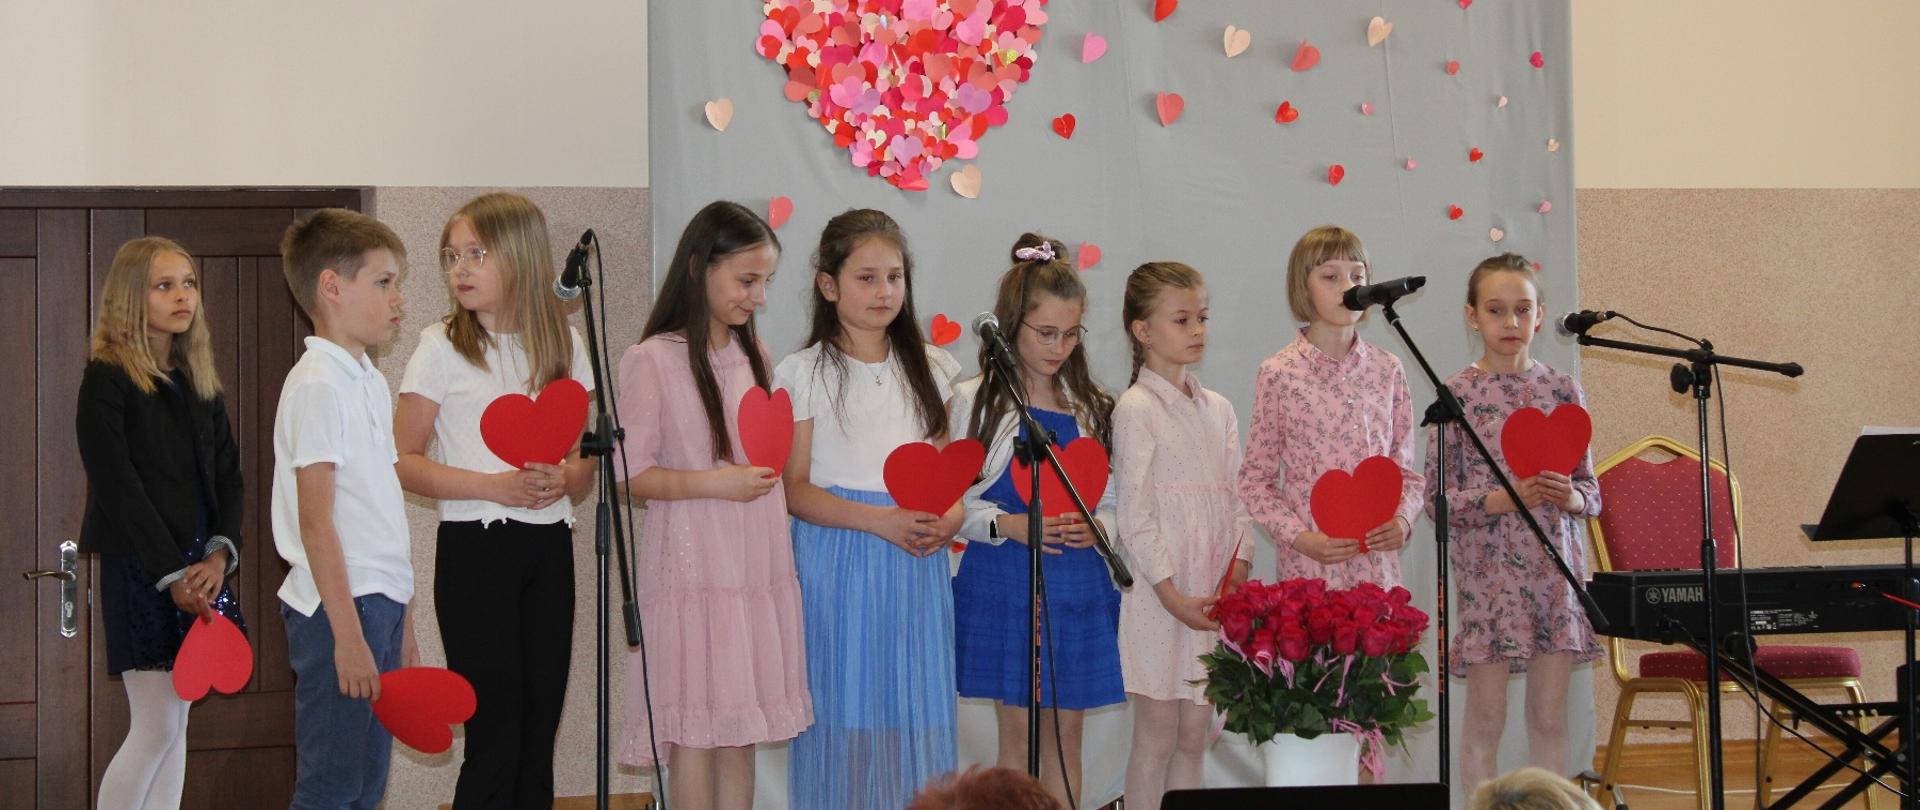 Dziewczynki ustawione w rzędzie, w rękach trzymają przed sobą czerwone serca